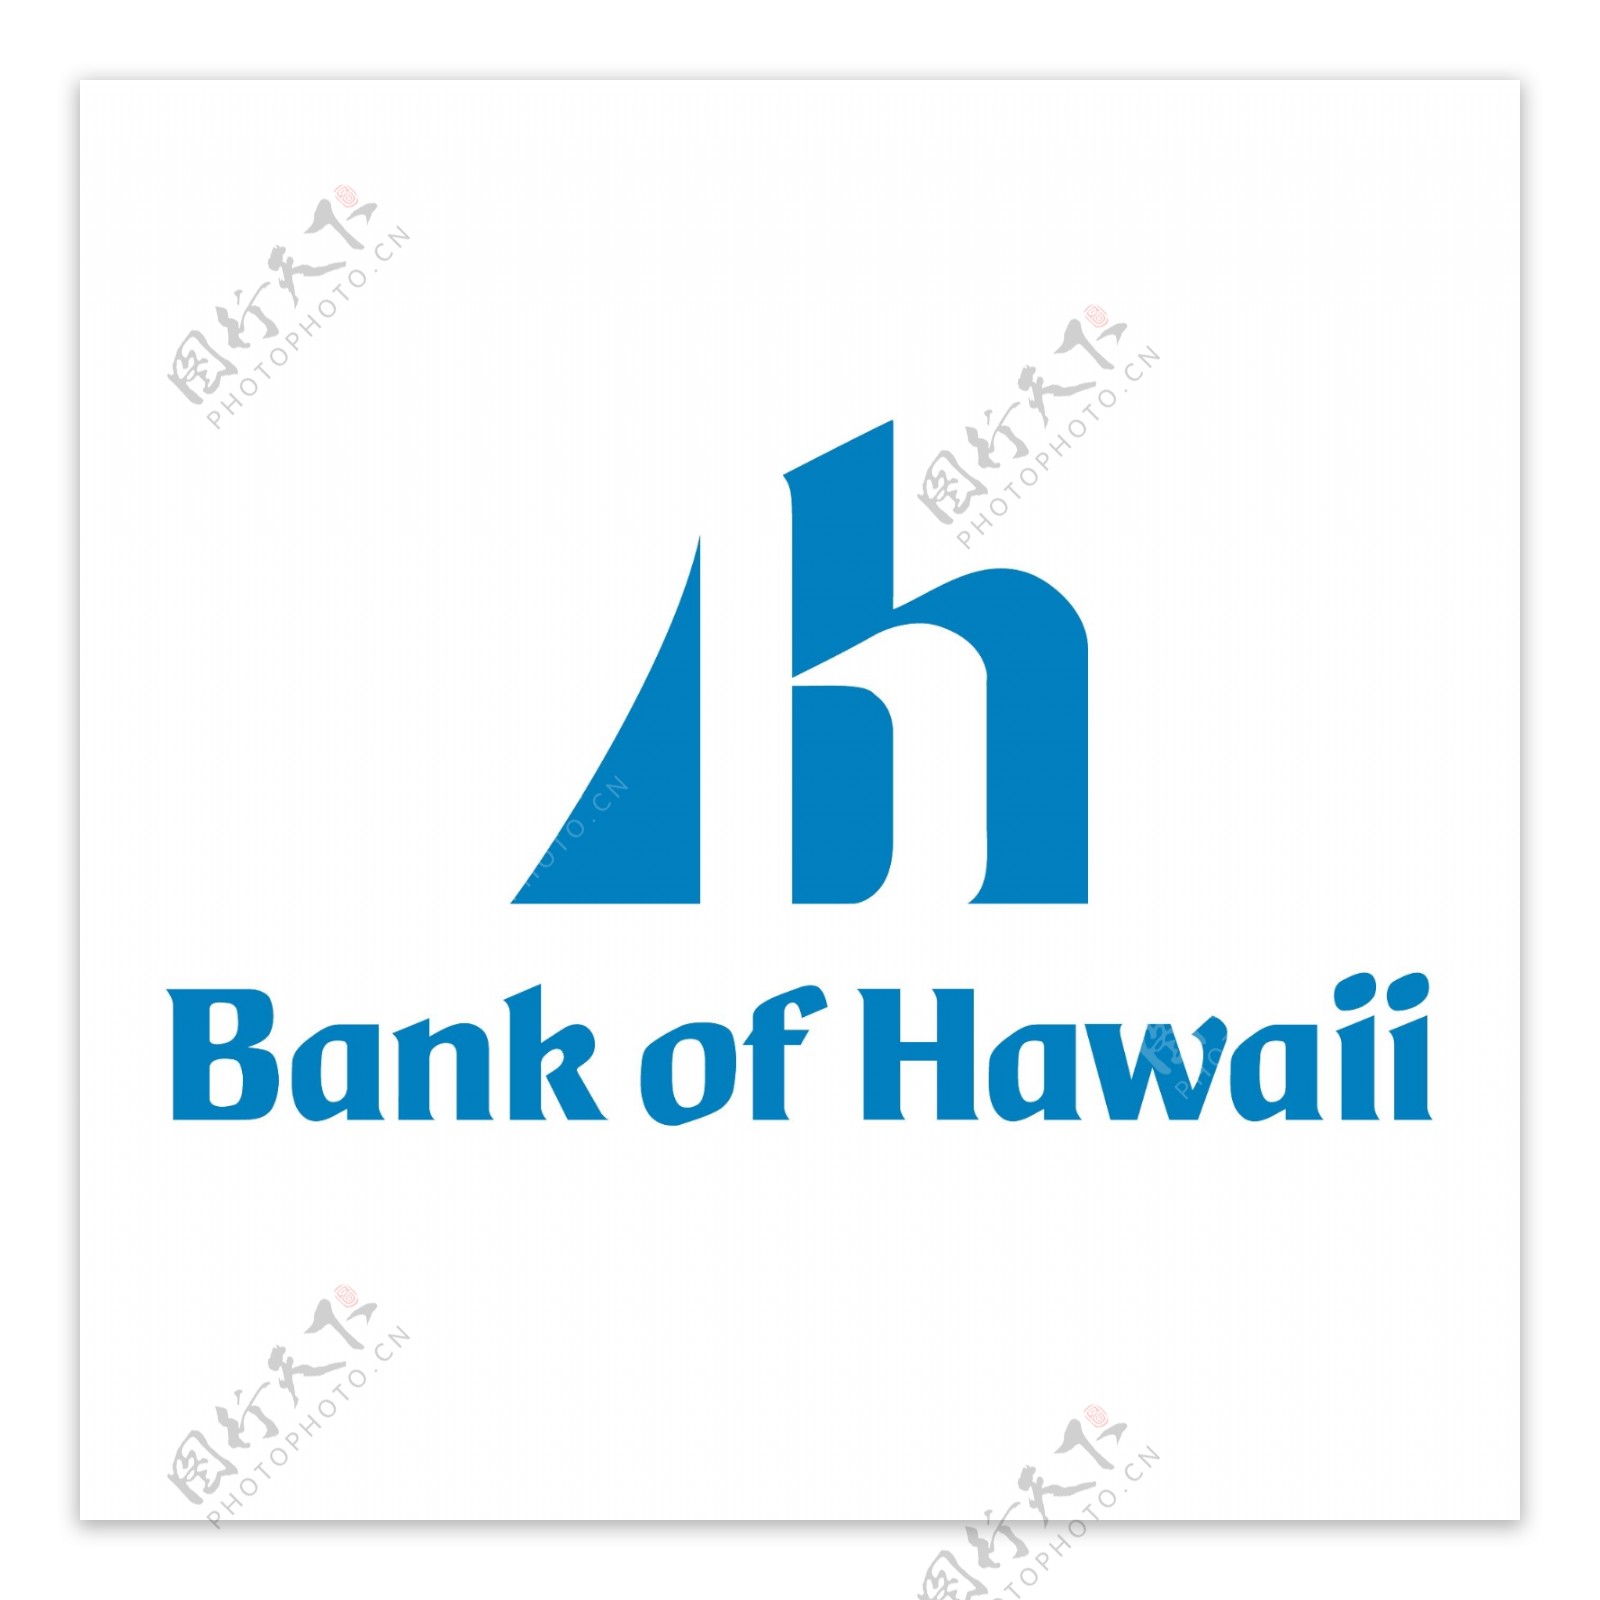 1夏威夷银行